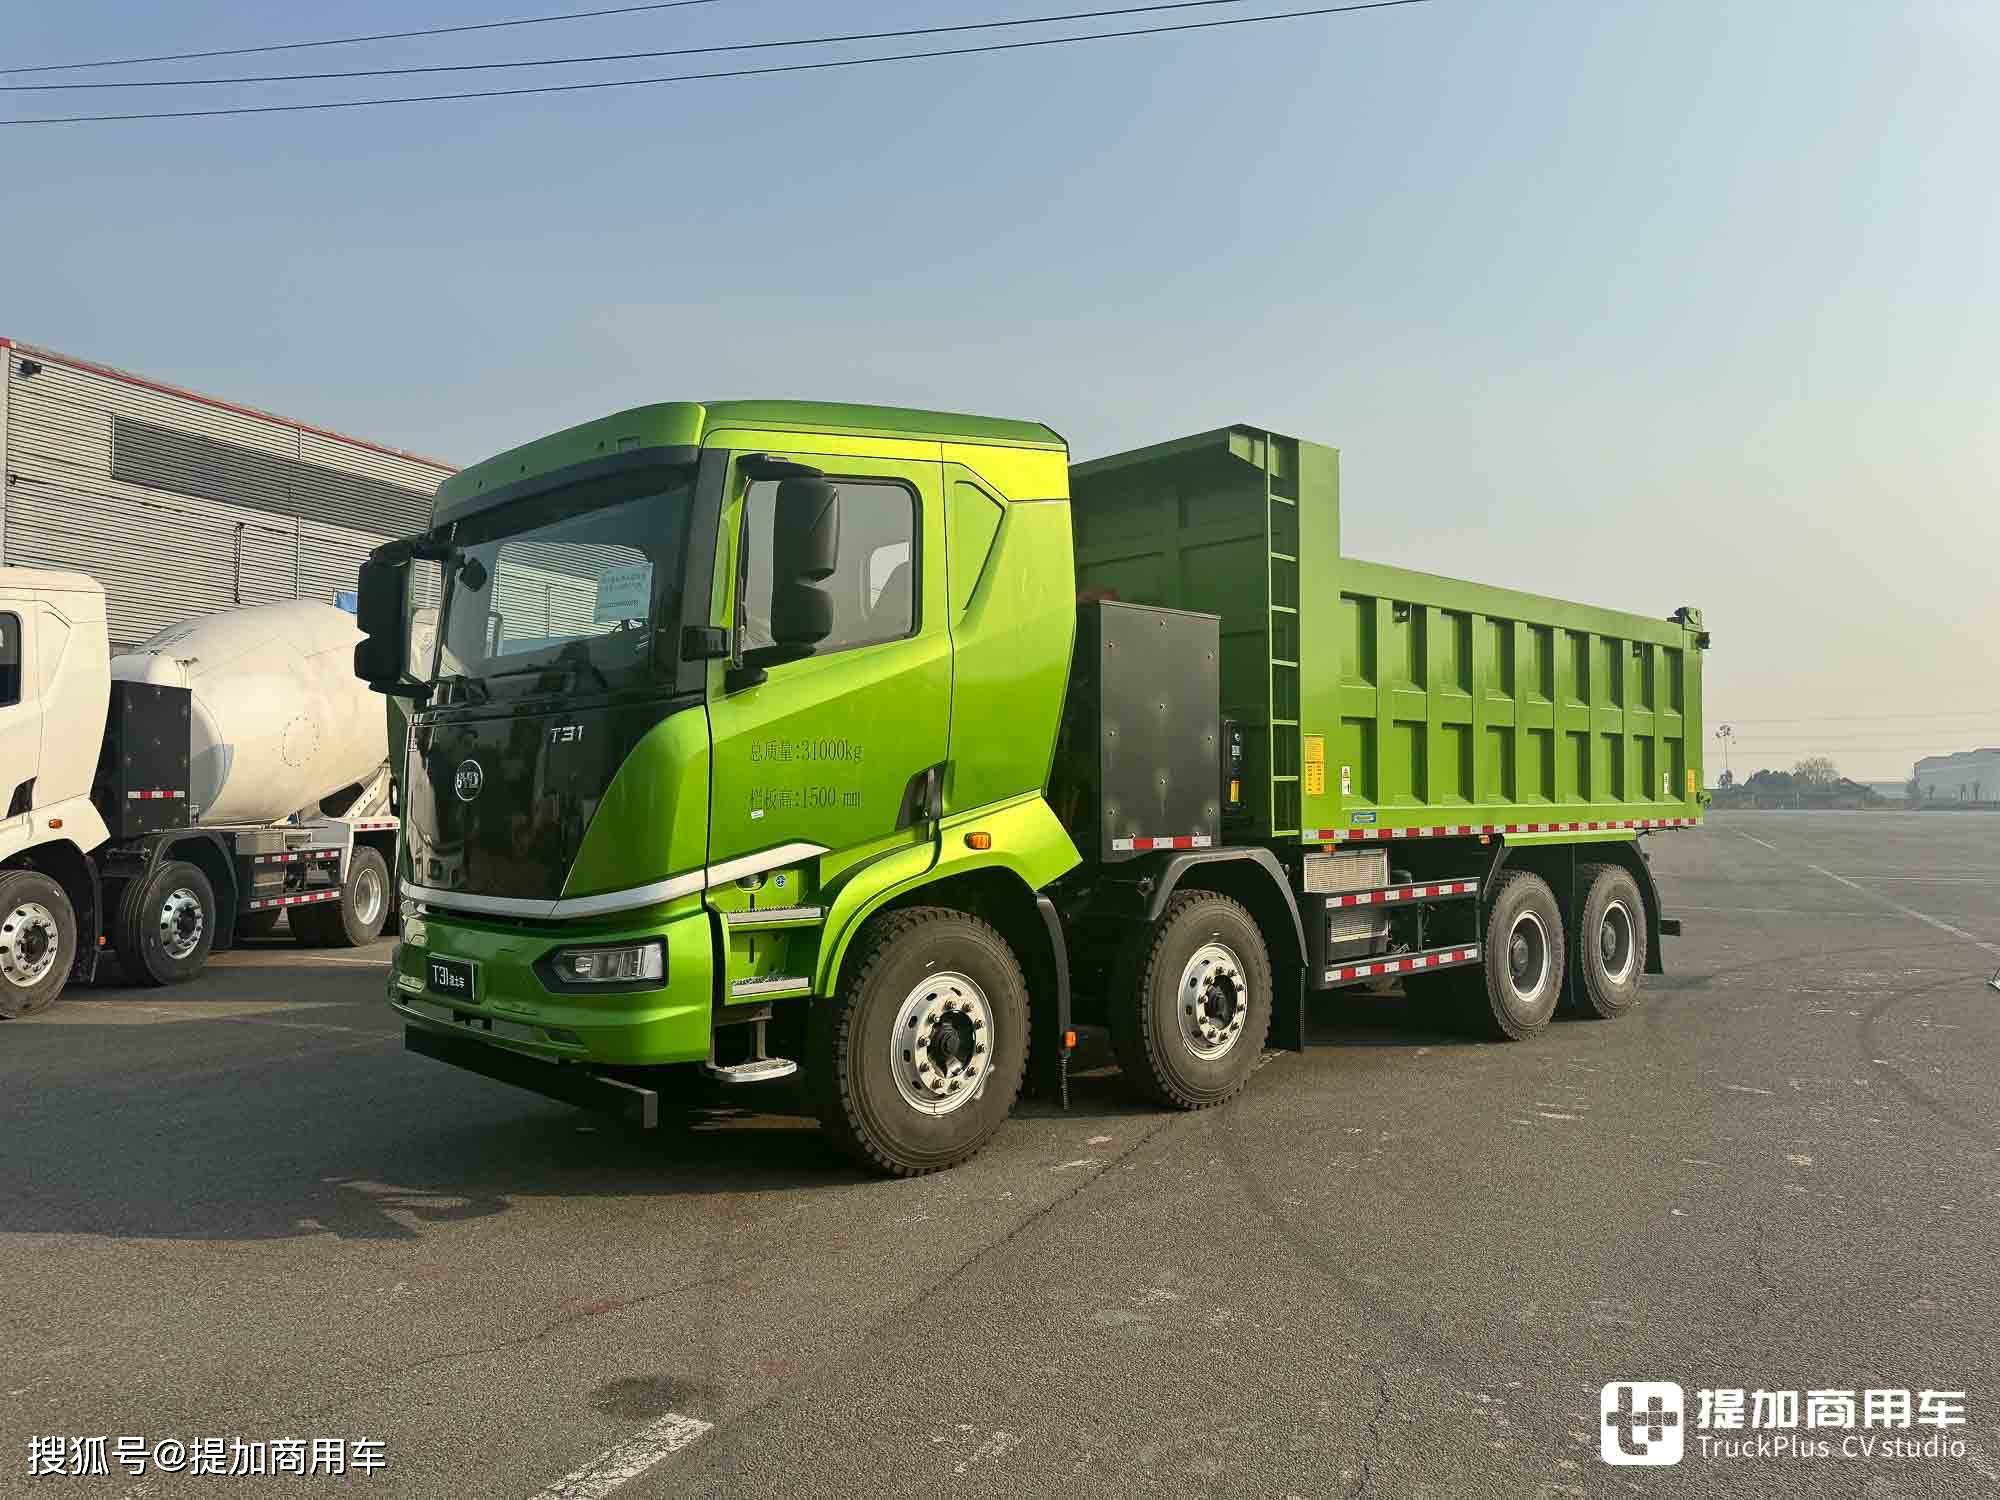 比亚迪t31电动渣土车实拍,四川客户买了300多台,啥配置这么强?